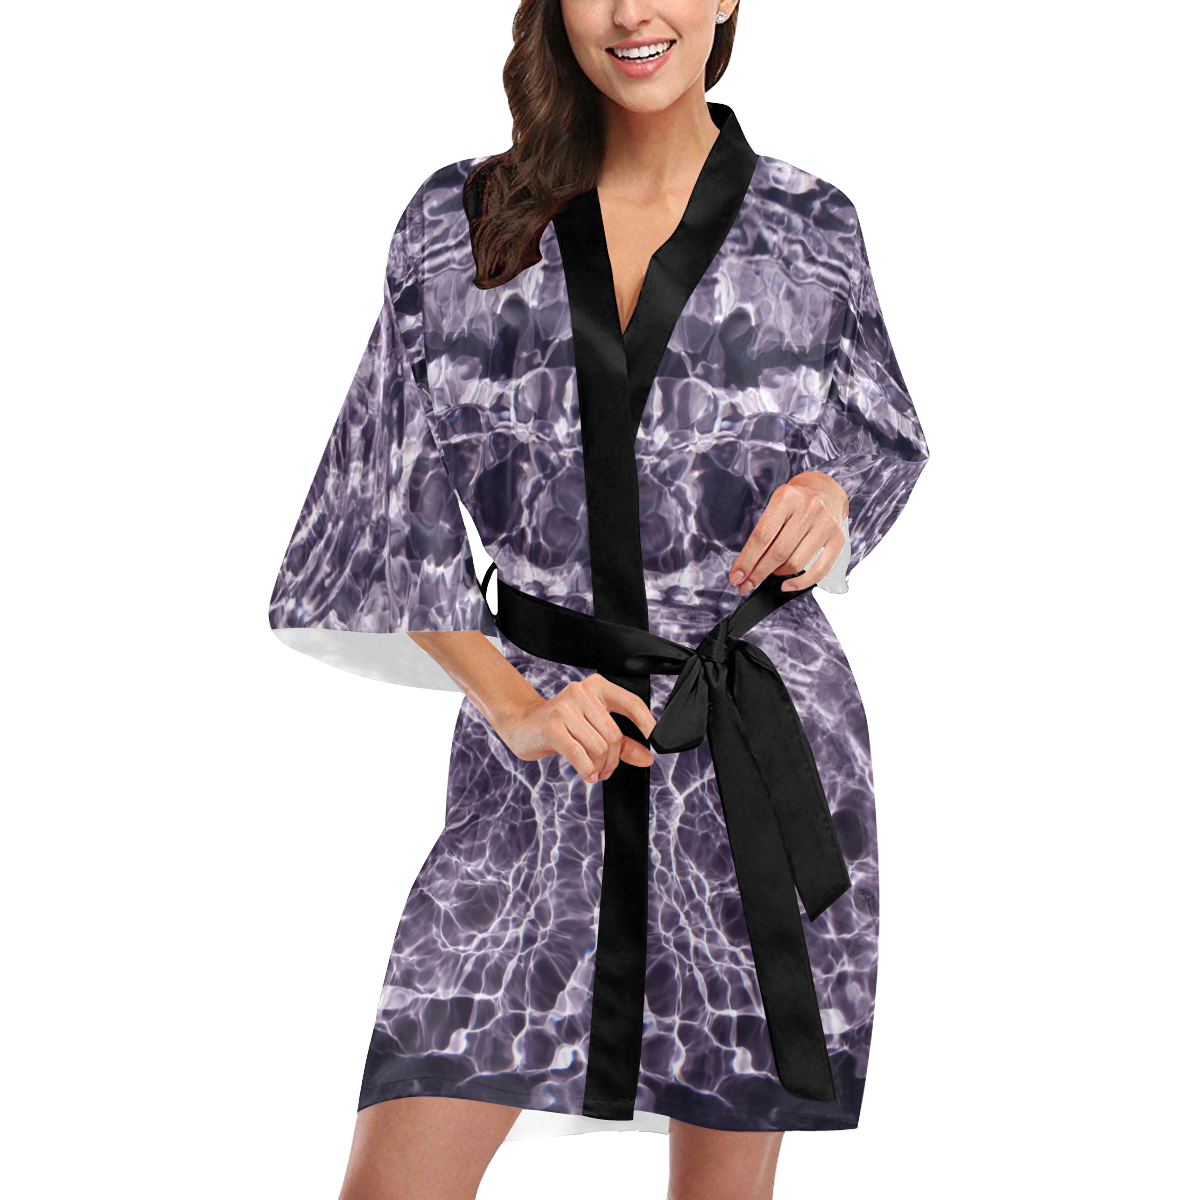 violaceous soul Kimono Robe